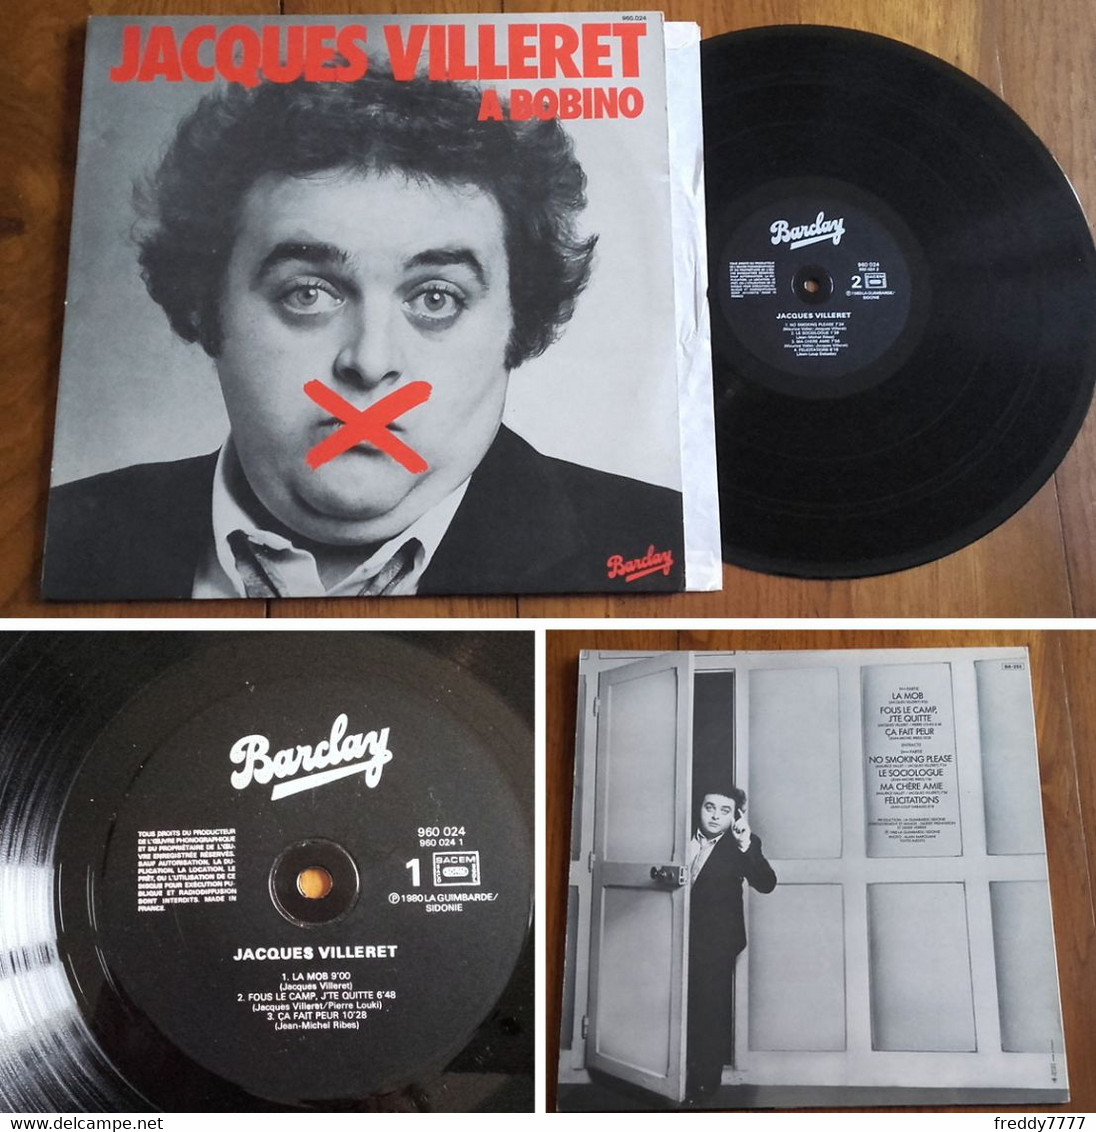 RARE French LP 33t RPM (12") JACQUES VILLERET à BOBINO (1980) - Ediciones De Colección